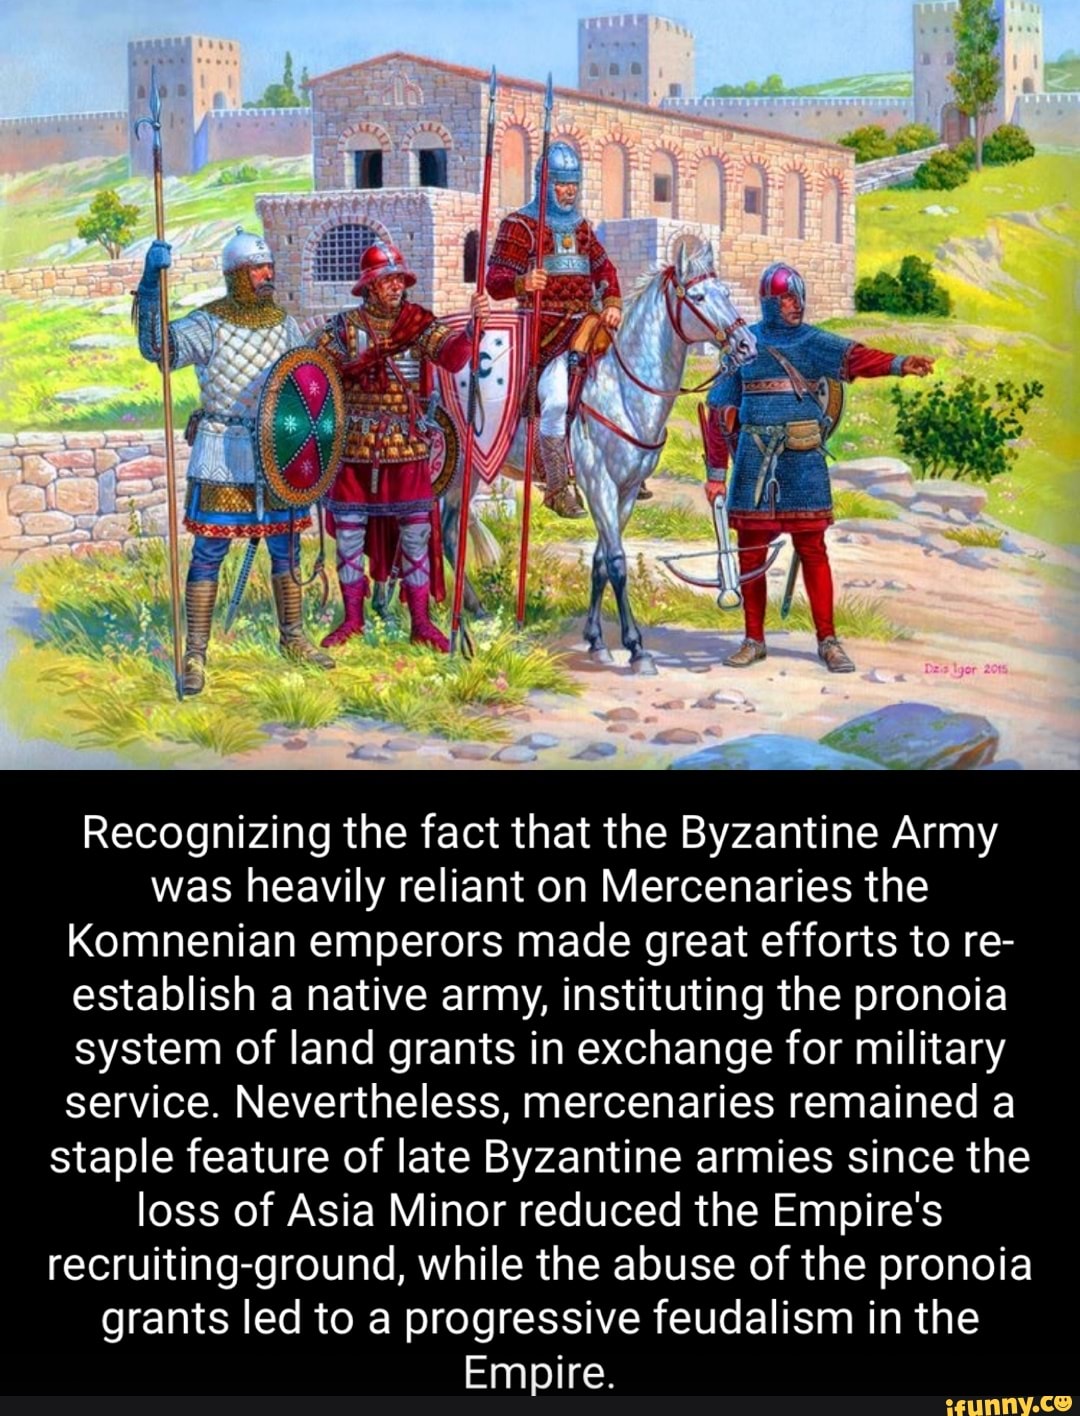 byzantine army